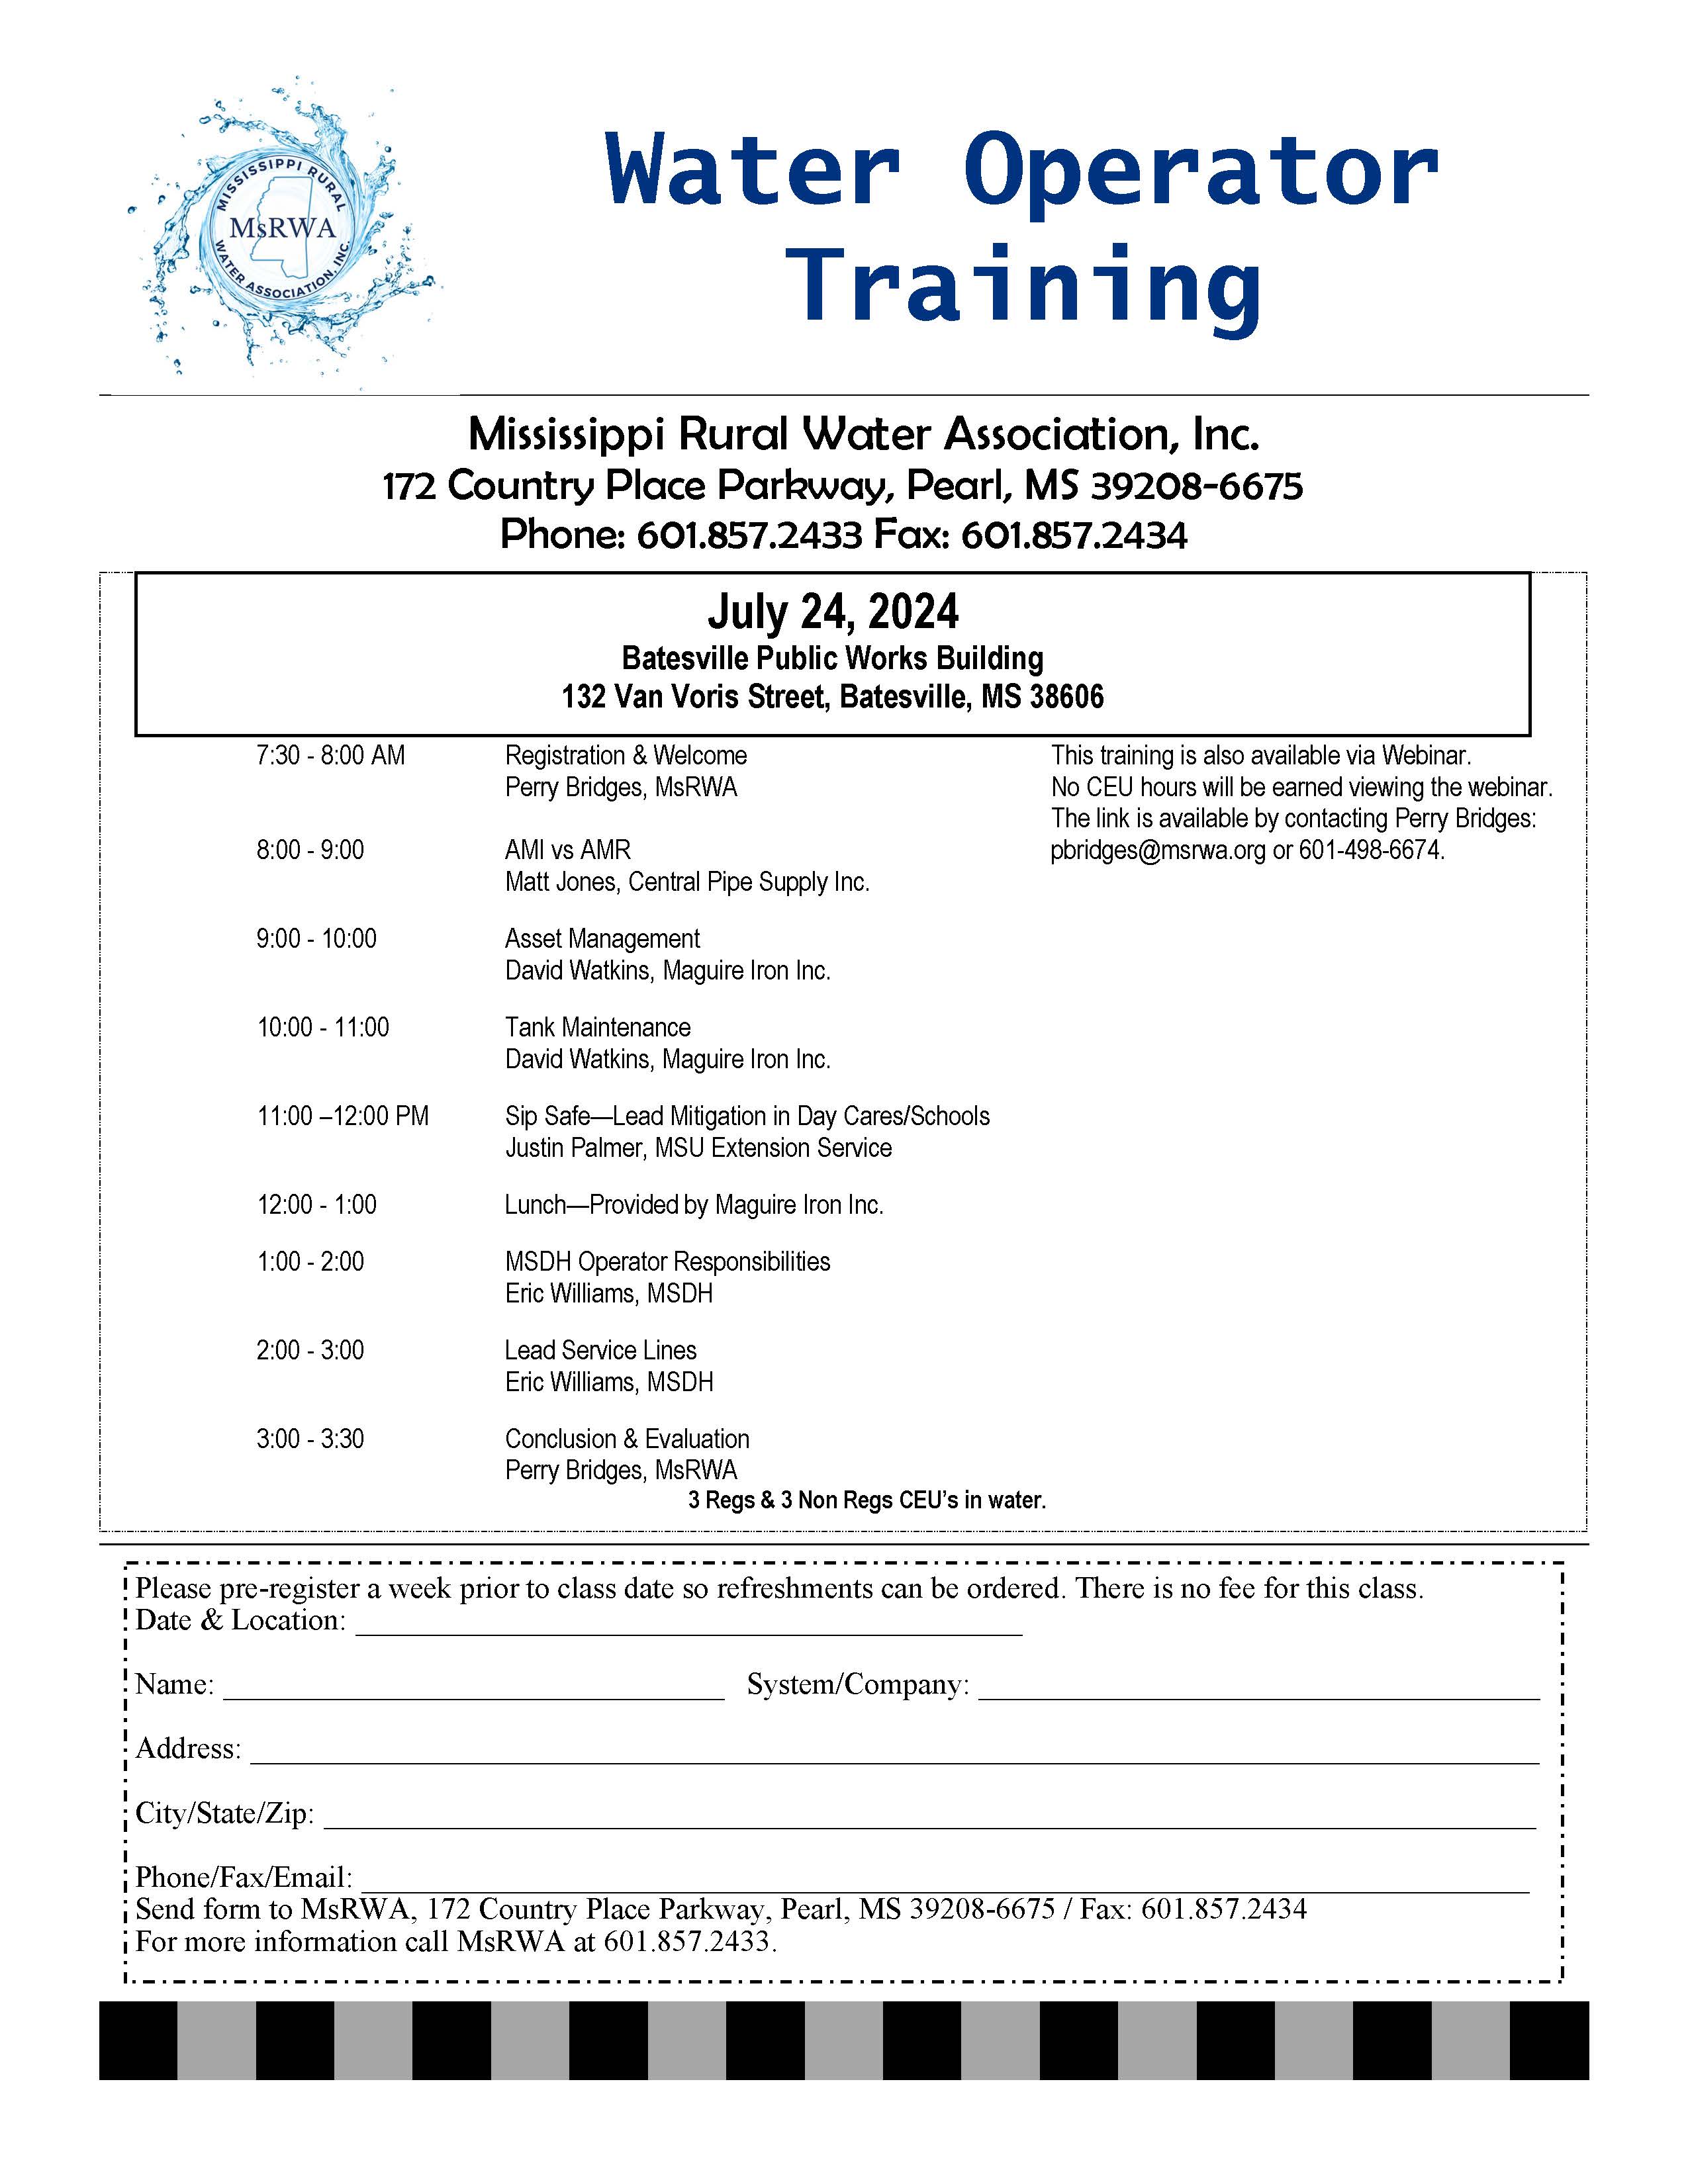 7/24/24 Water Operator Training